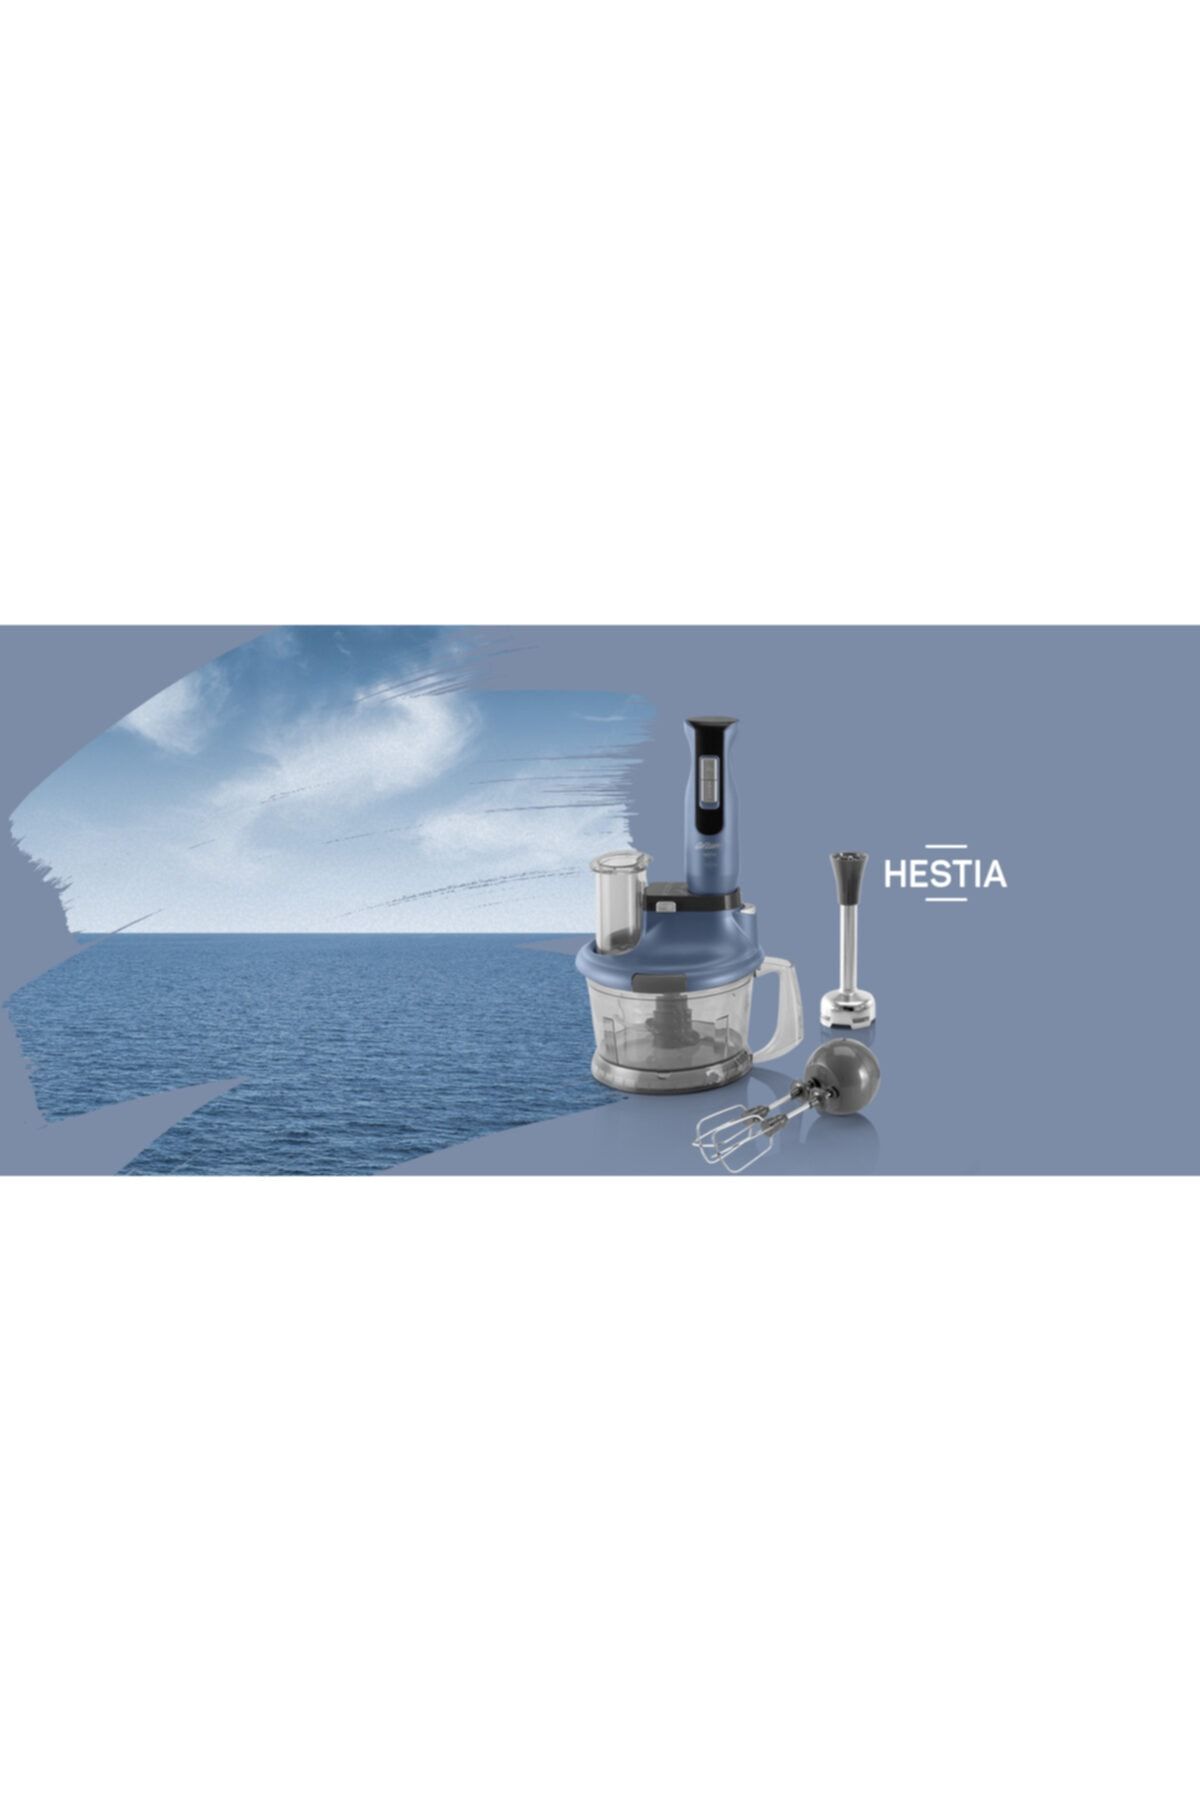 Arzum Hestia Multi Blender Set 1500 W Okyanus Blender Seti